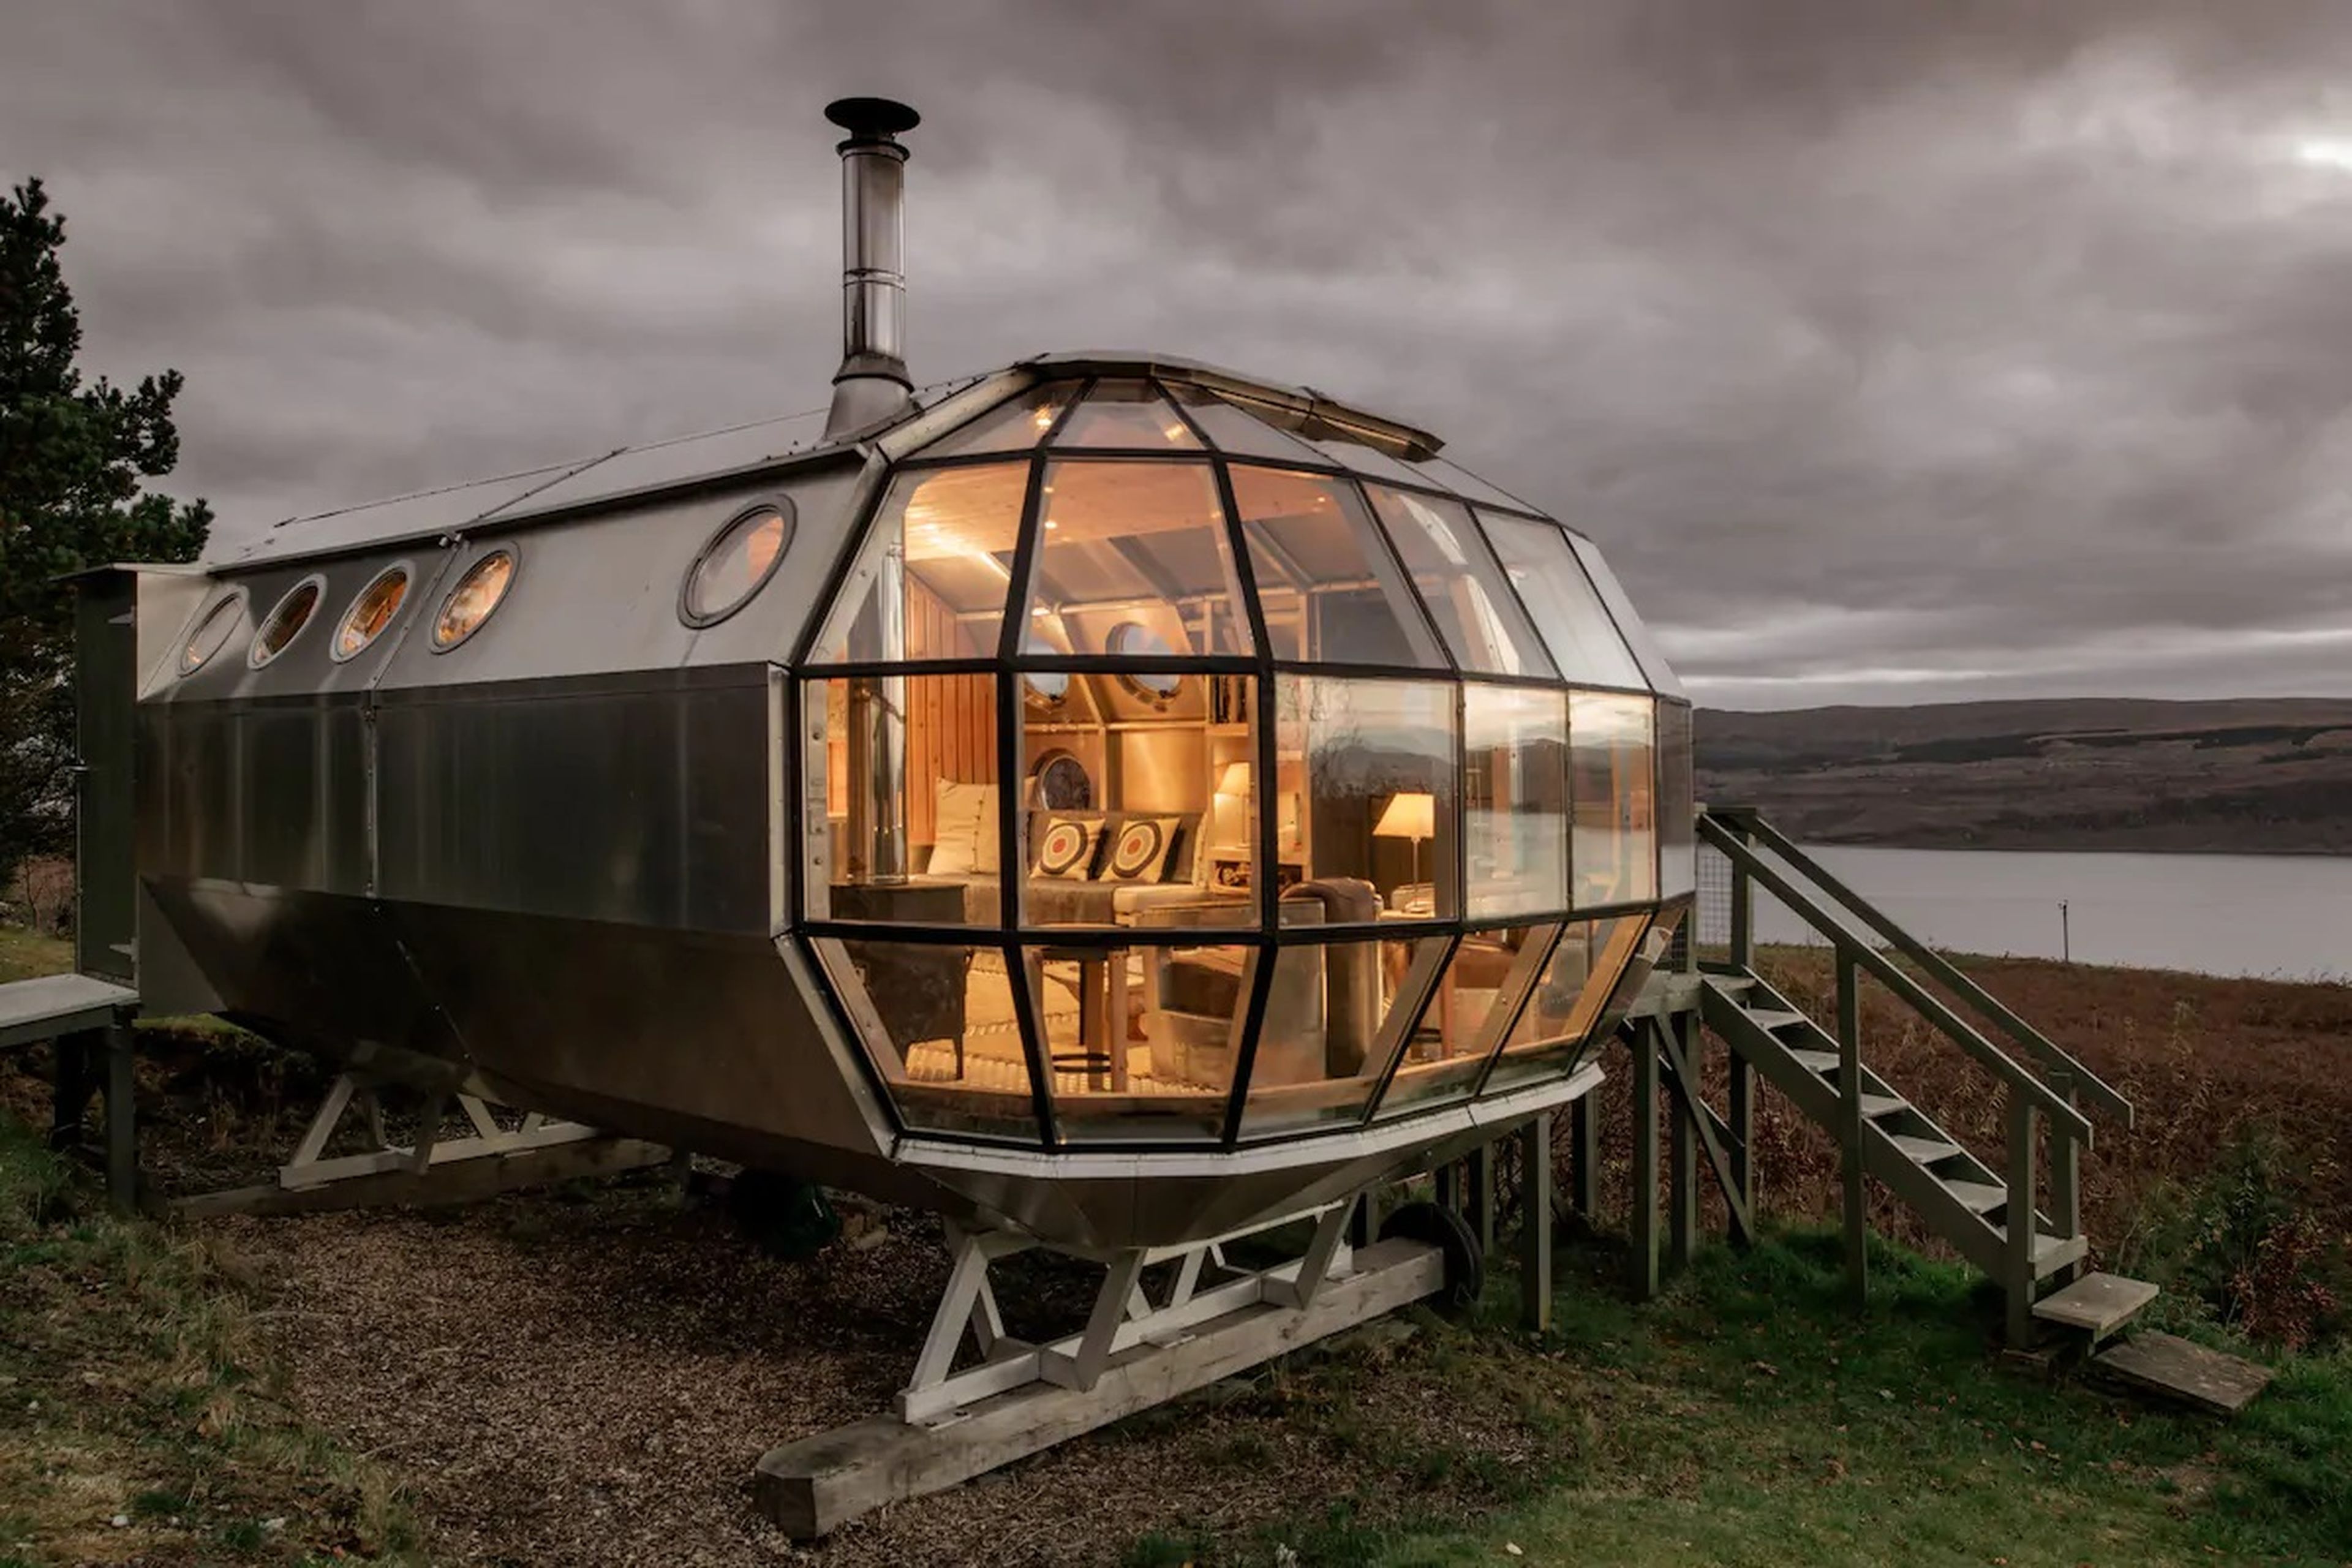 Construyen una "nave espacial" en 10 días y ganan 6.000 euros al mes alquilándola en Airbnb